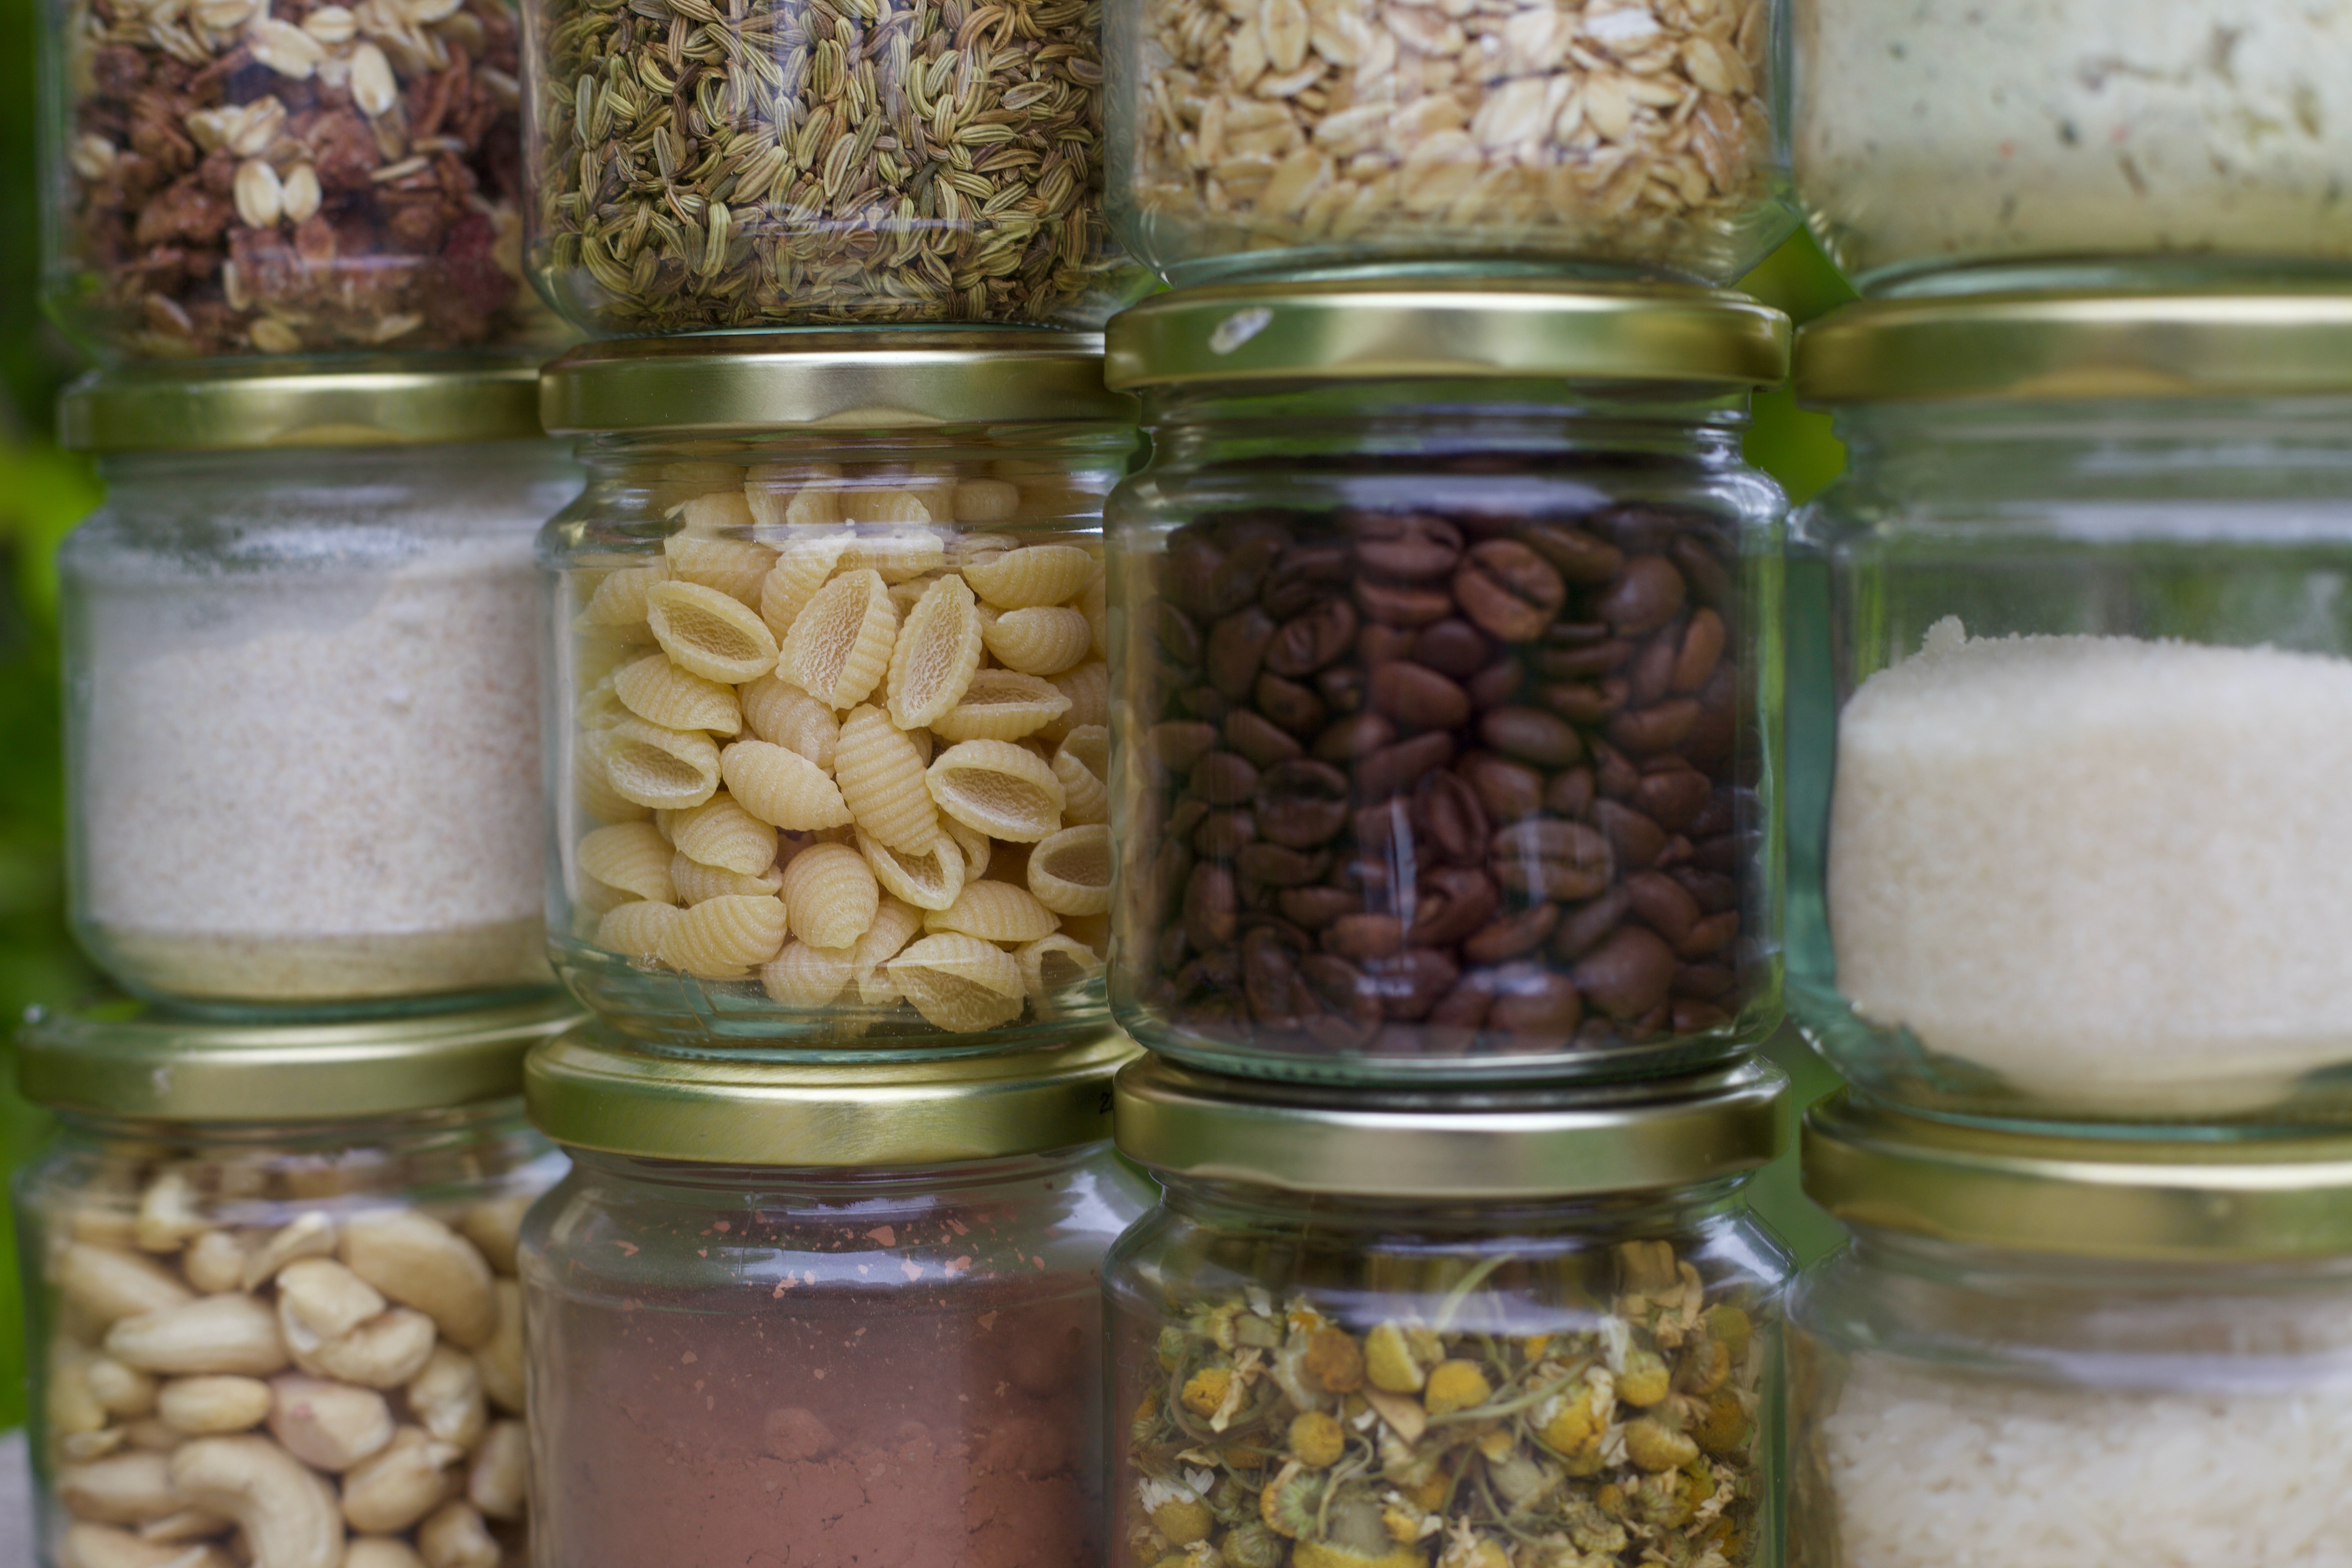 Ingredients stored in jars